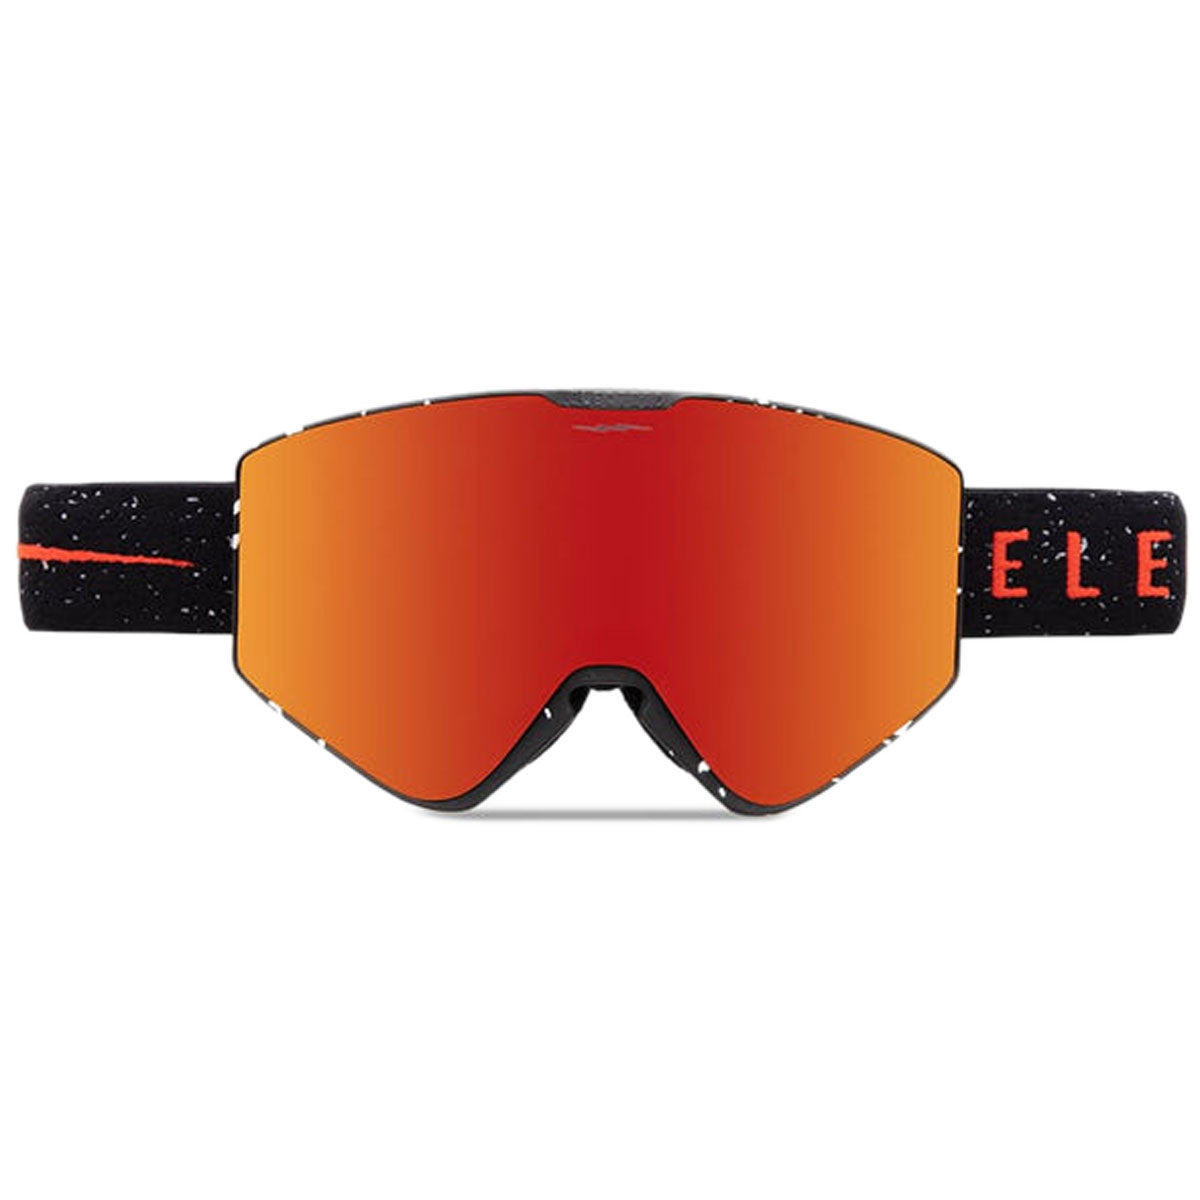 Electric Kleveland II Snowboard Goggles - Matte Speckled Black/Auburn Red image 1